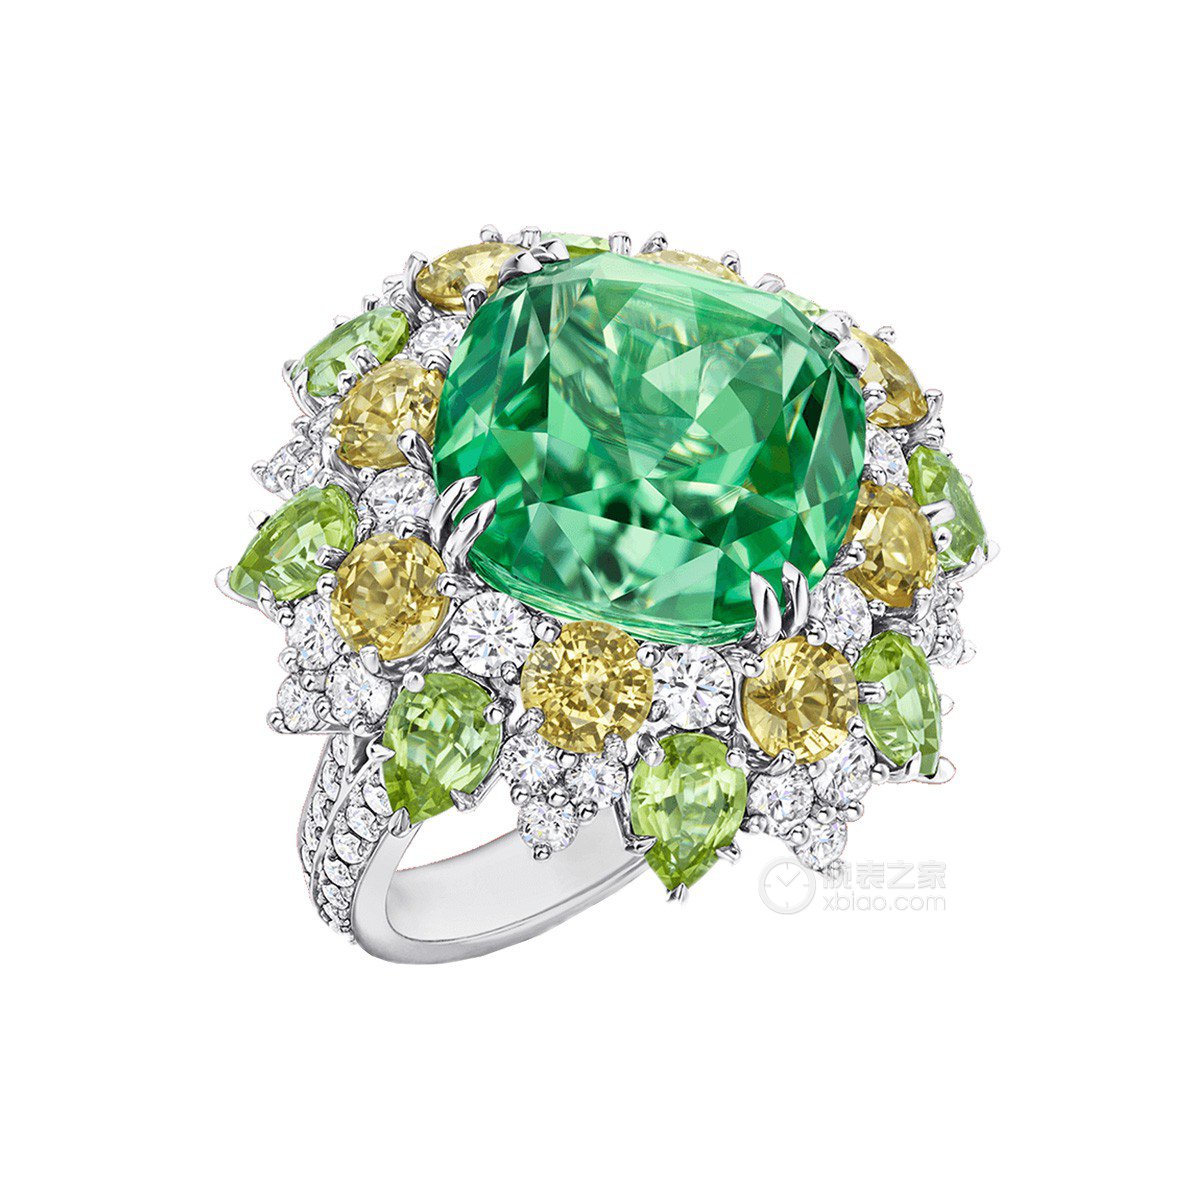 海瑞温斯顿Winston Candy高级珠宝系列绿色珍罕碧玺配黄色蓝宝石、 橄榄石和钻石戒指戒指